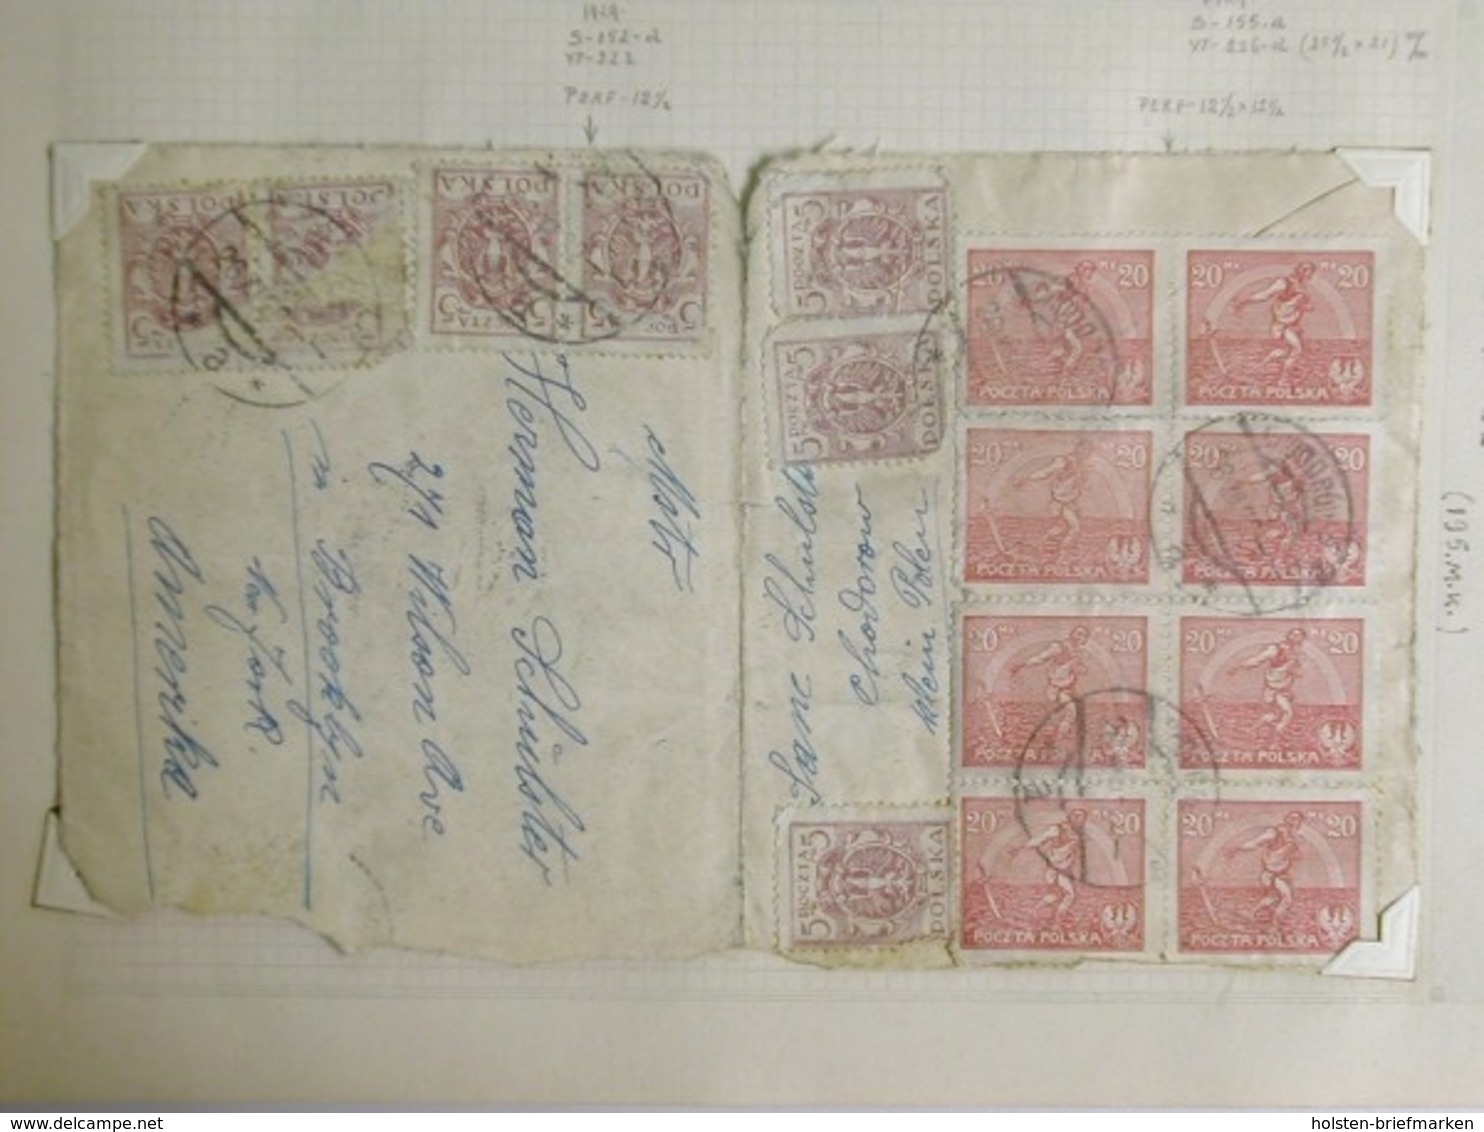 Polen, Partie aus den 1920er Jahren, meist Briefstücke